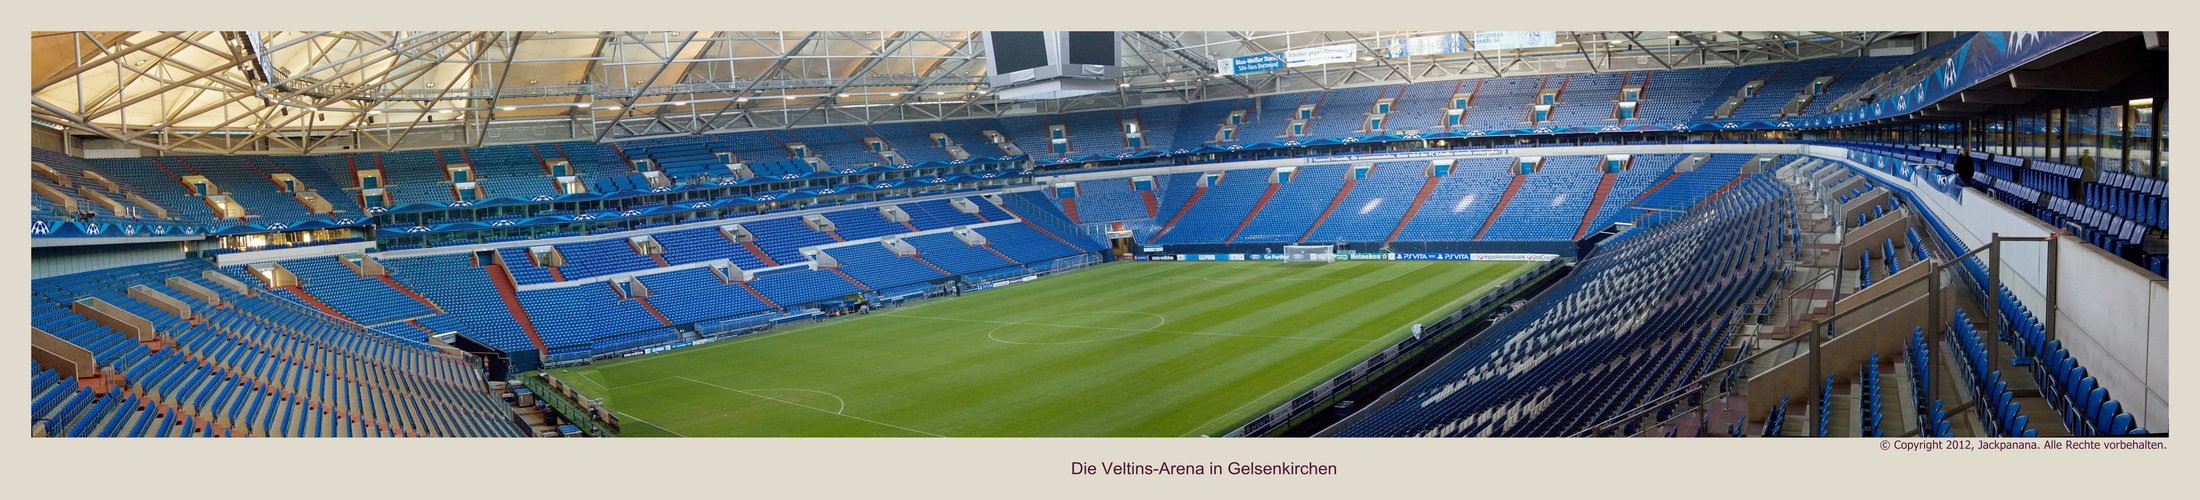 Die Veltins - Arena in Gelsenkirchen